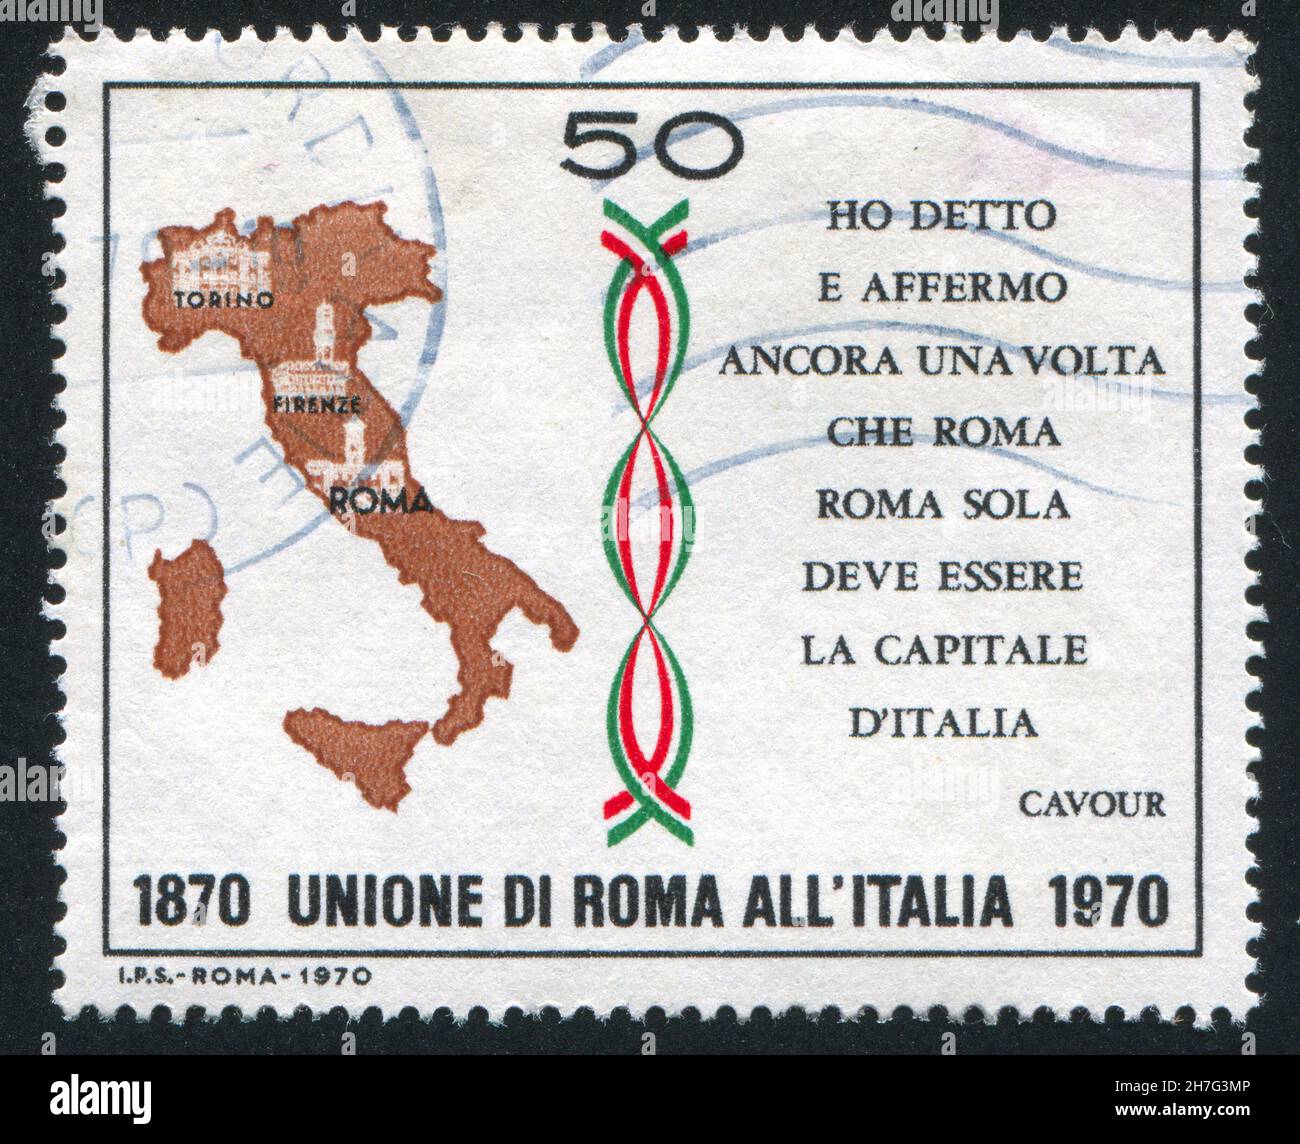 ITALIE - VERS 1970: Timbre imprimé par l'Italie, montre la carte de l'Italie et la citation du Comte Camillo Cavour, vers 1970 Banque D'Images